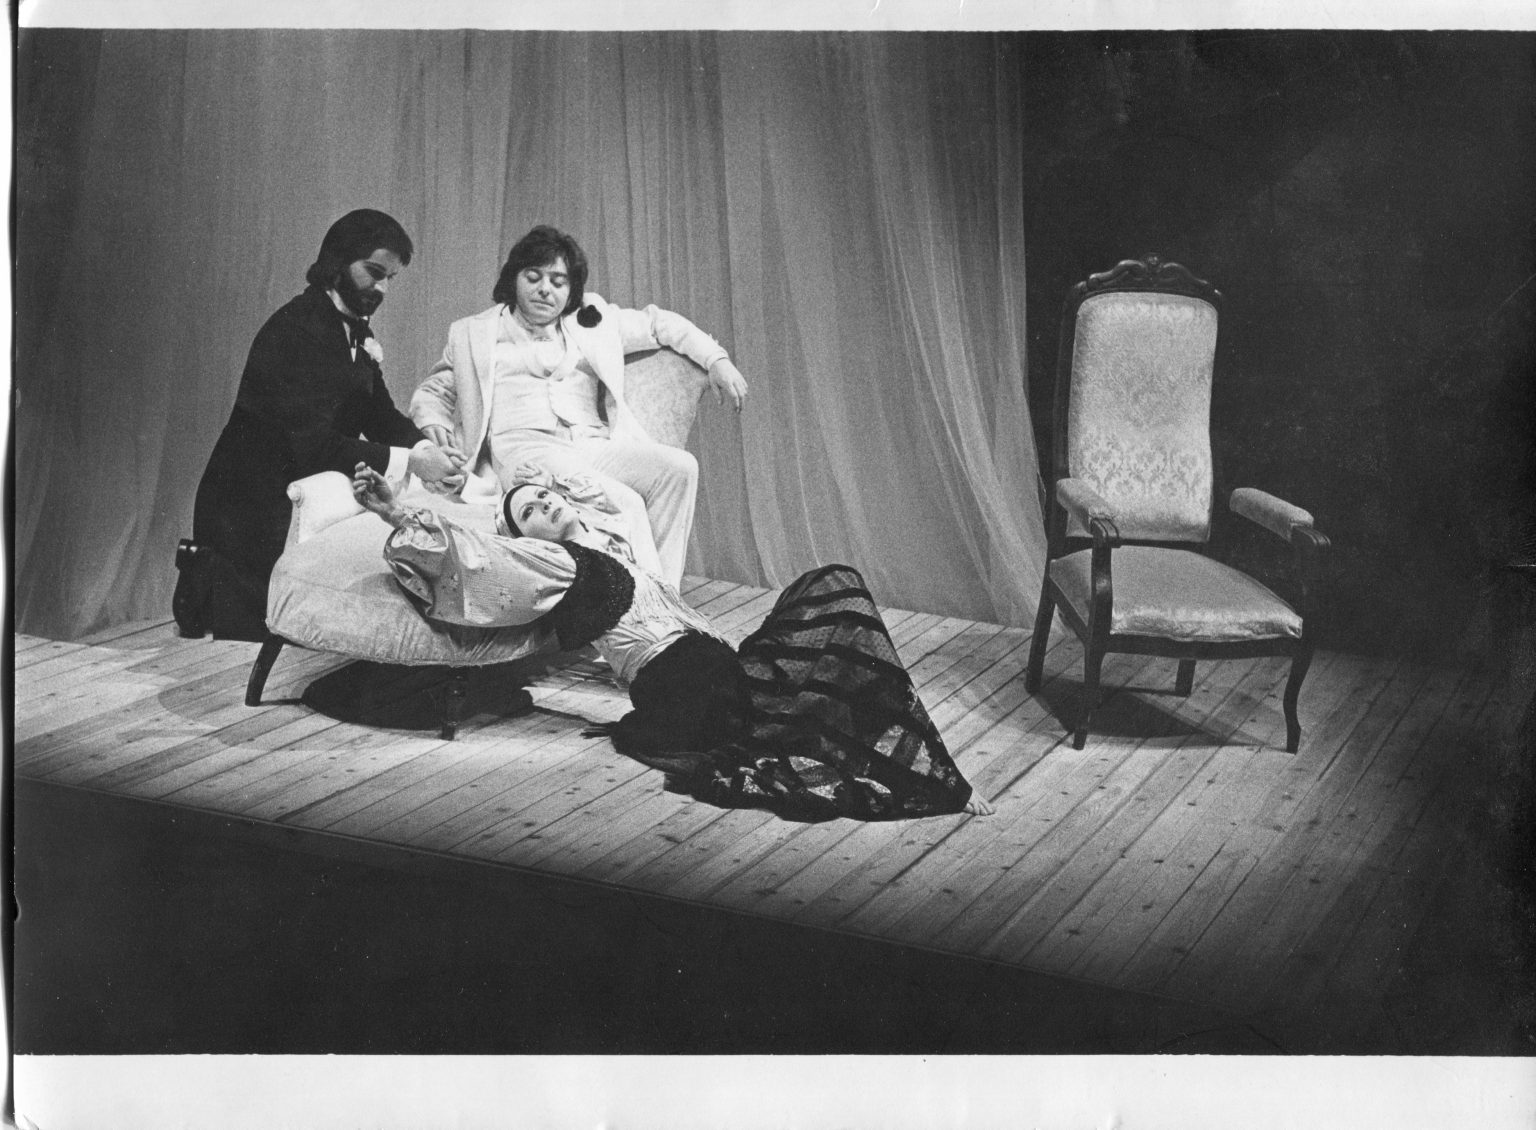 1976 - Maison de poupée - Ensemble Théâtral Mobile - avec Janine Patrick et Claude Koener